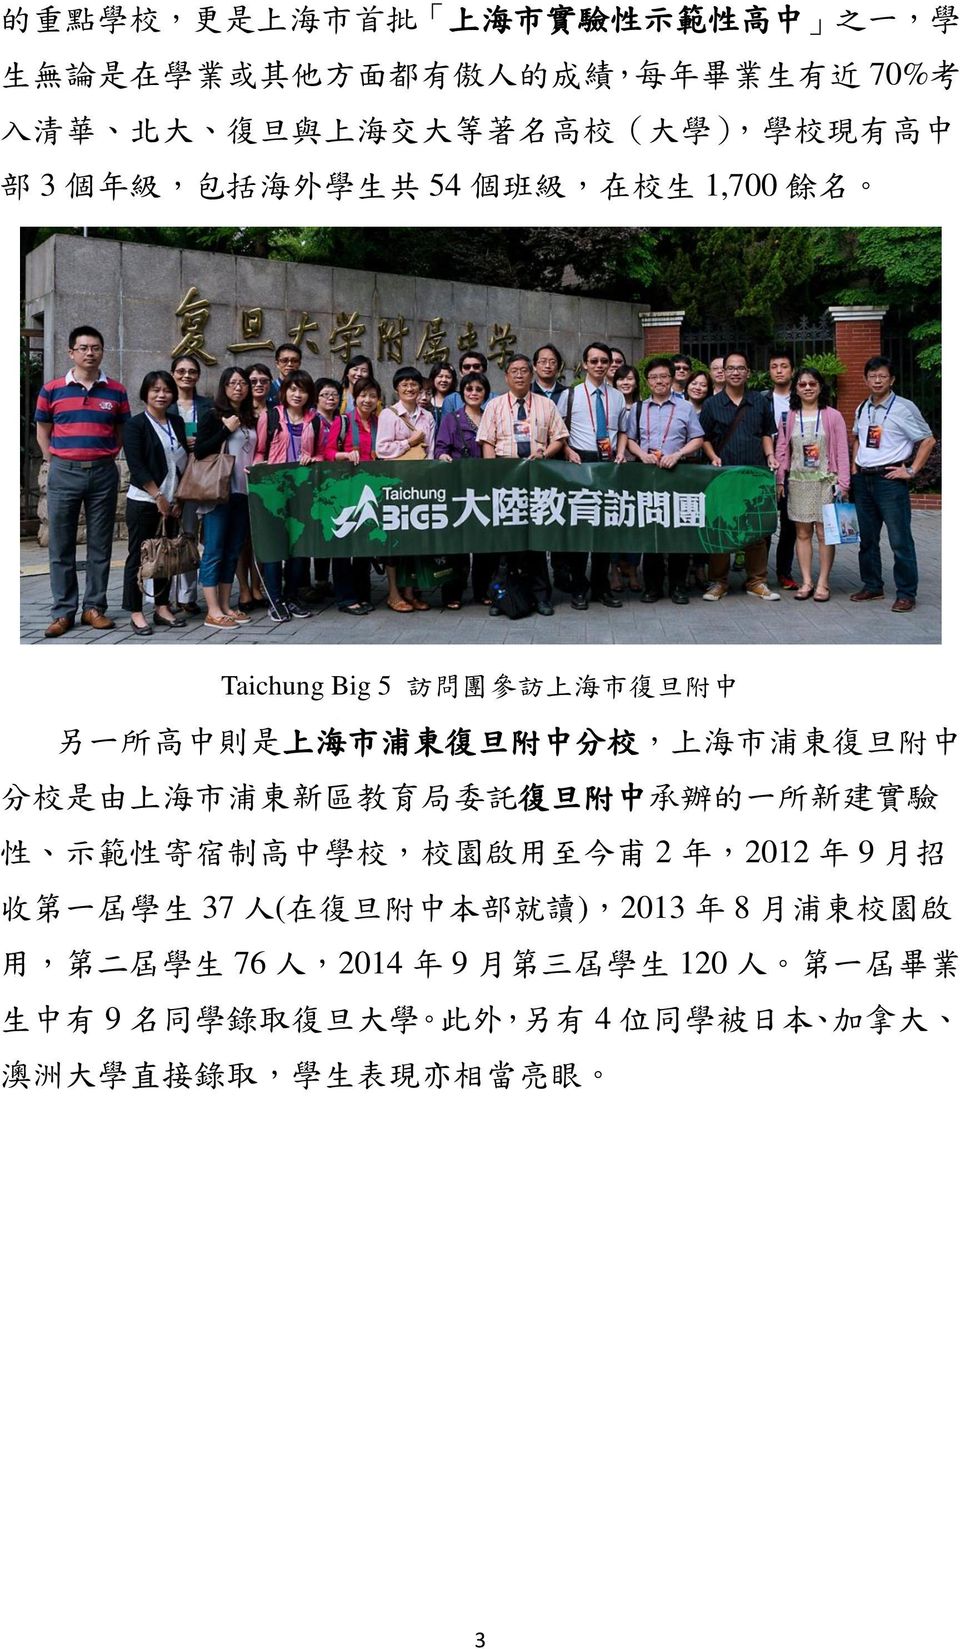 校 是 由 上 海 市 浦 東 新 區 教 育 局 委 託 復 旦 附 中 承 辦 的 一 所 新 建 實 驗 性 示 範 性 寄 宿 制 高 中 學 校, 校 園 啟 用 至 今 甫 2 年,2012 年 9 月 招 收 第 一 屆 學 生 37 人 ( 在 復 旦 附 中 本 部 就 讀 ),2013 年 8